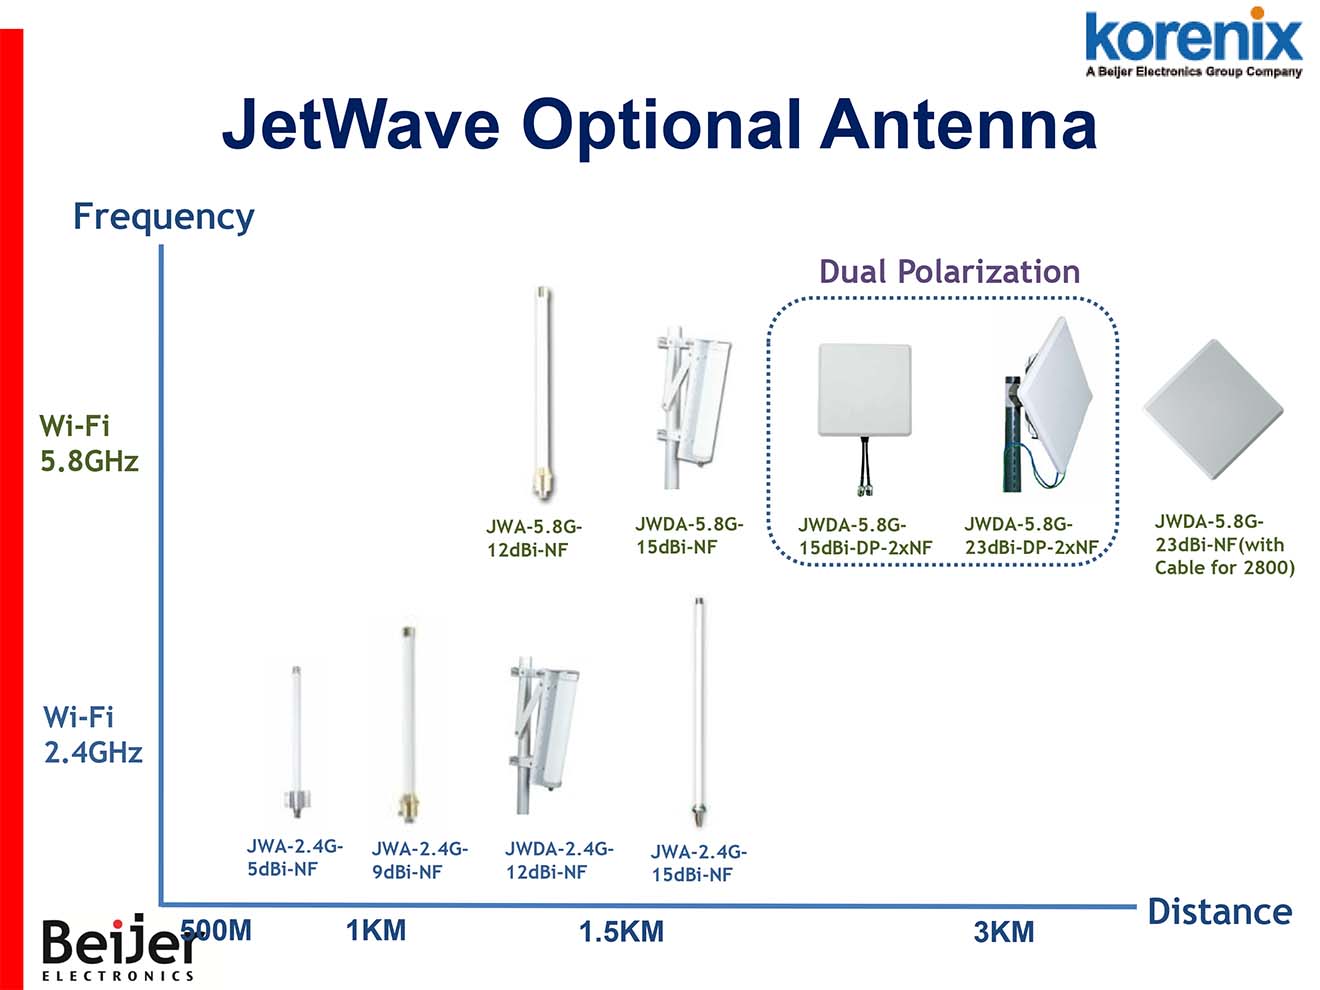 JWDA-2.4G-9dBi-NF Korenix Anten Omi đẳng hướng tăng khoảng cách thu phát sóng 9dBi